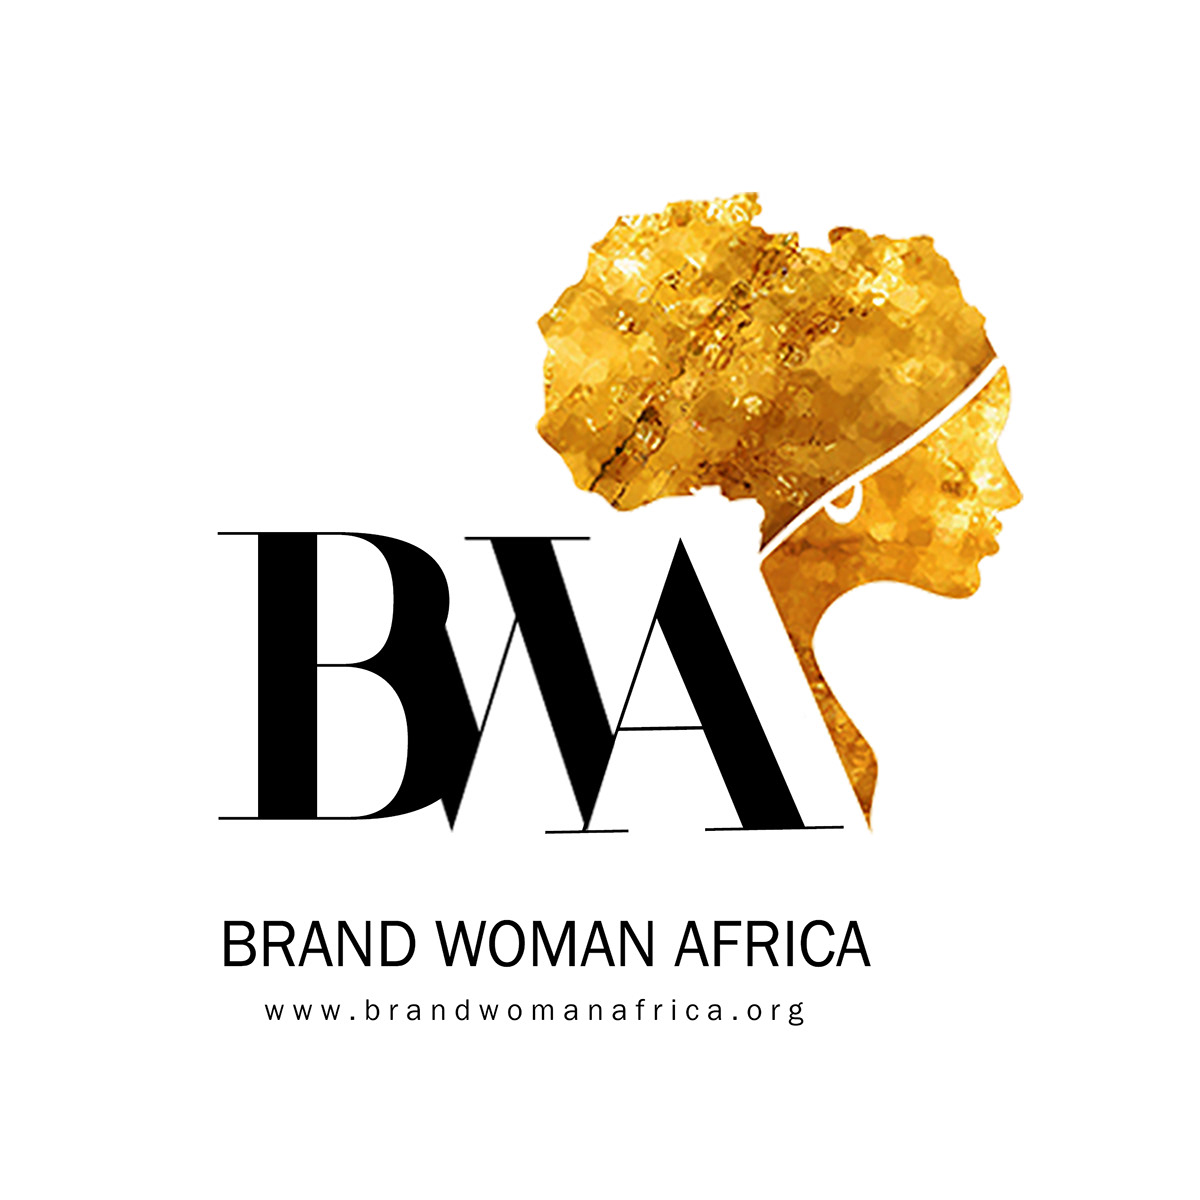 bwa logo Socialmedia